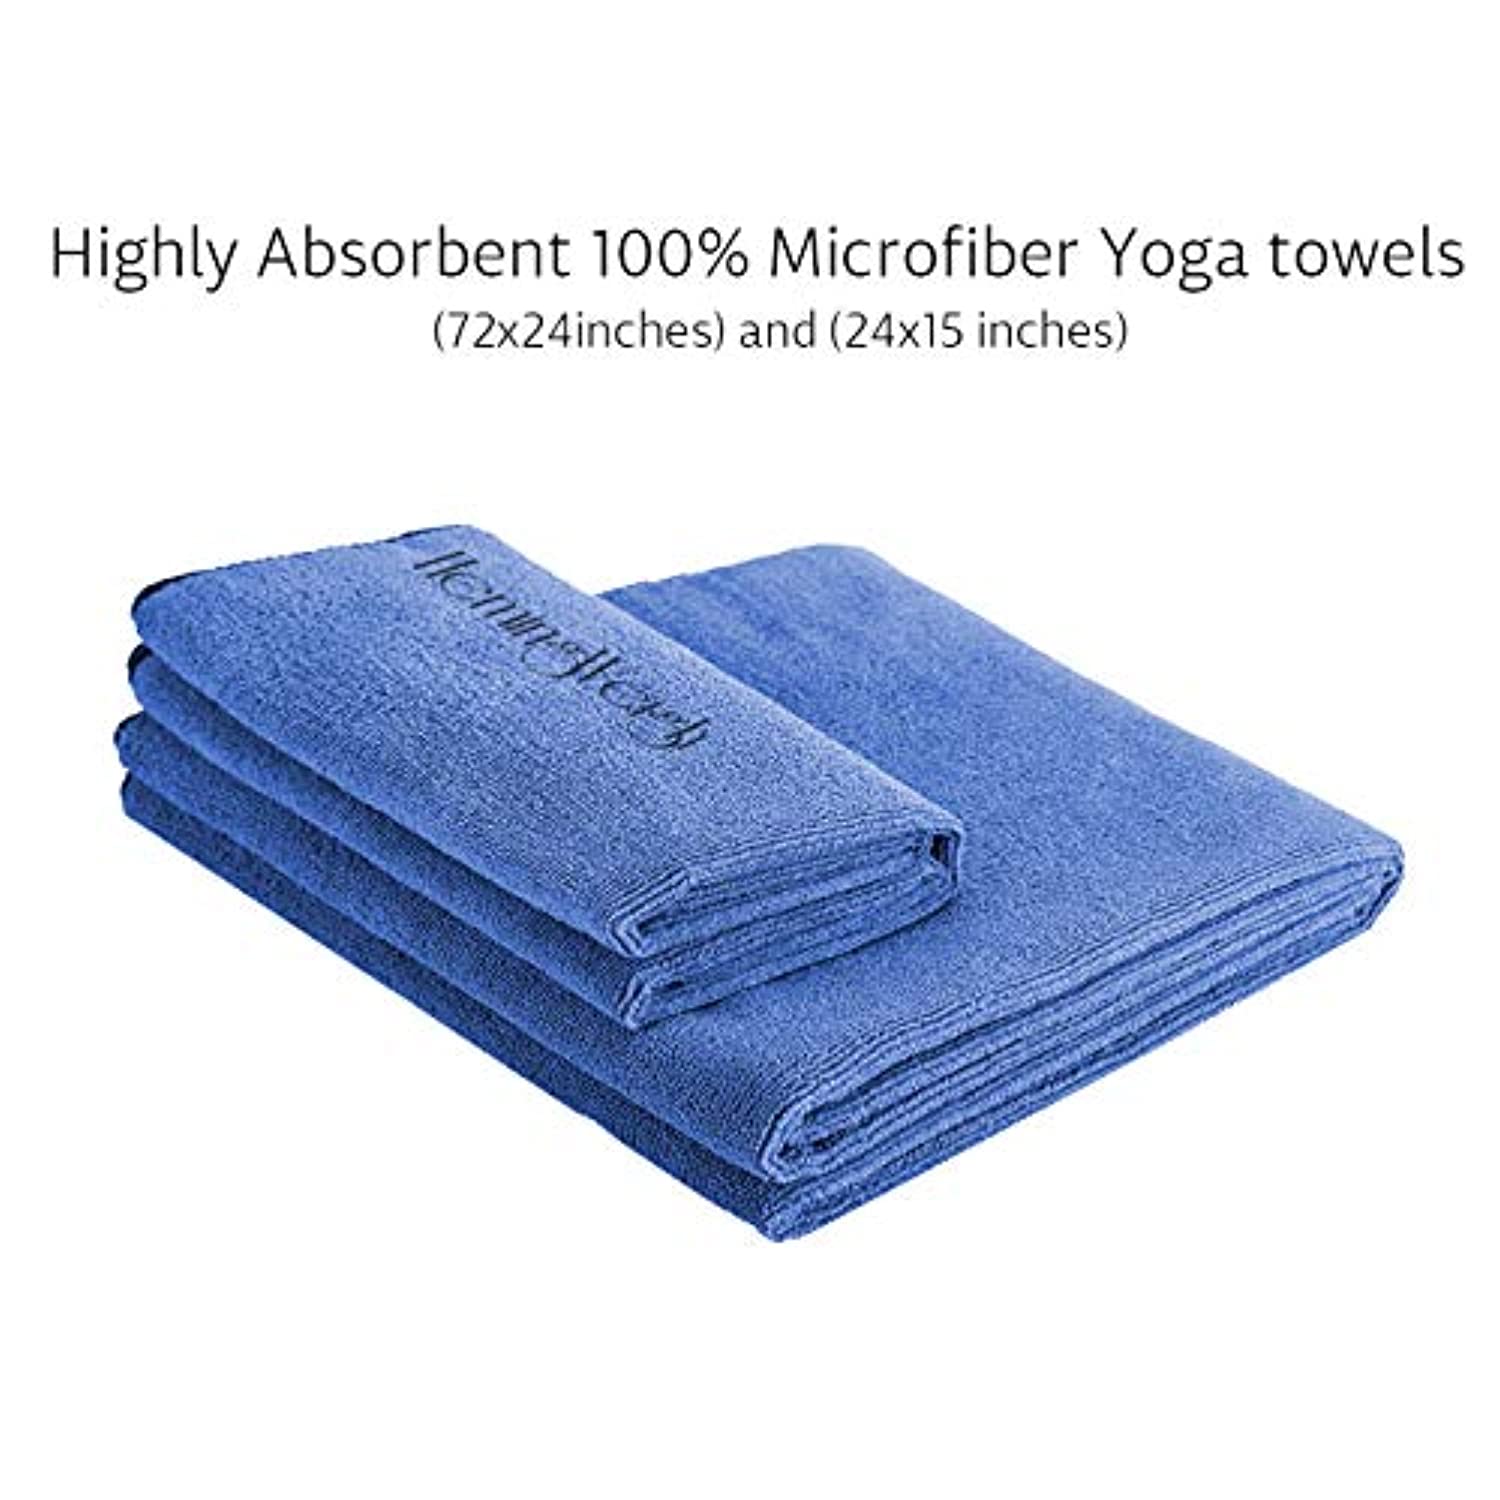  HemingWeigh Kit de yoga – Set de esterilla de yoga incluye  correa de transporte, bloques de yoga, correa de yoga y 2 toallas de  microfibra de yoga – Equipo de yoga